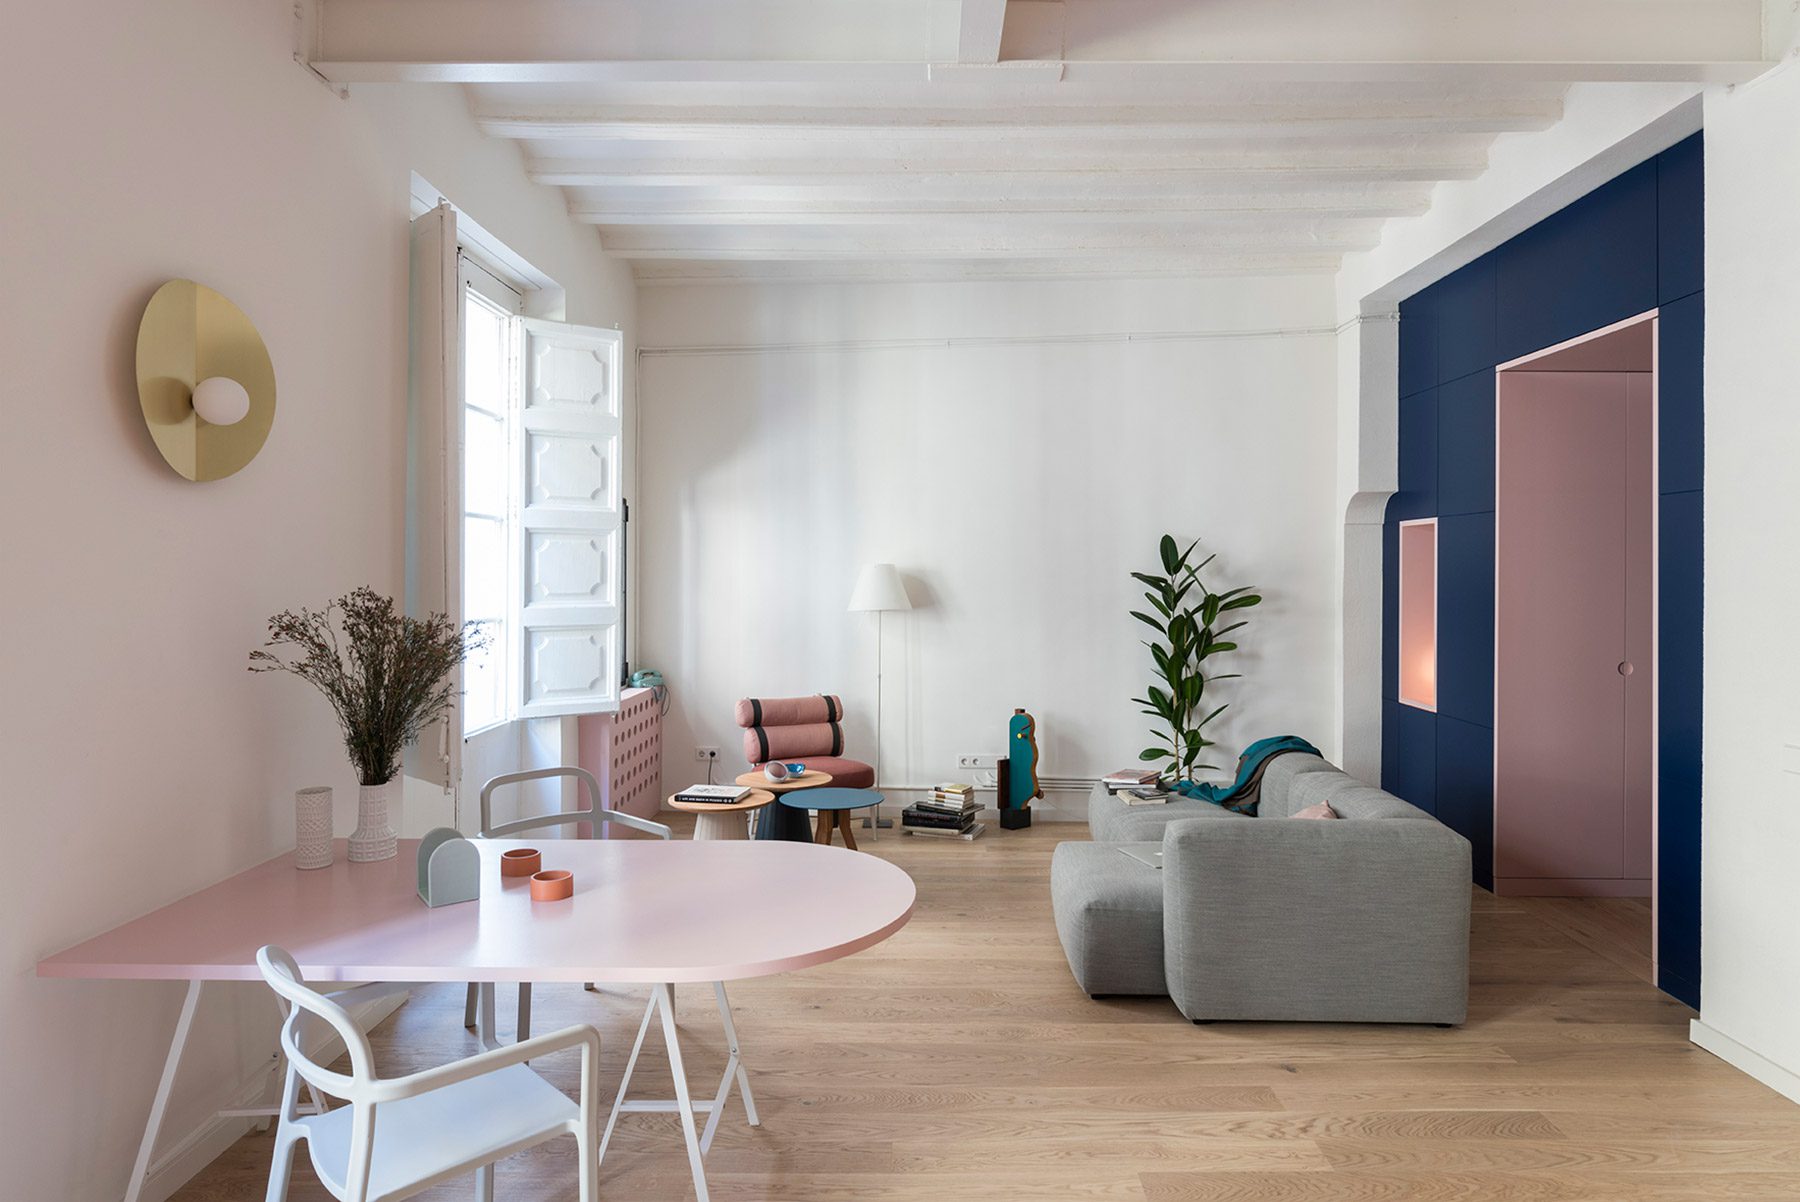 Los arquitectos Andrea Serboli y Matteo Colombo dan nueva vida a un apartamento en el Born de Barcelona